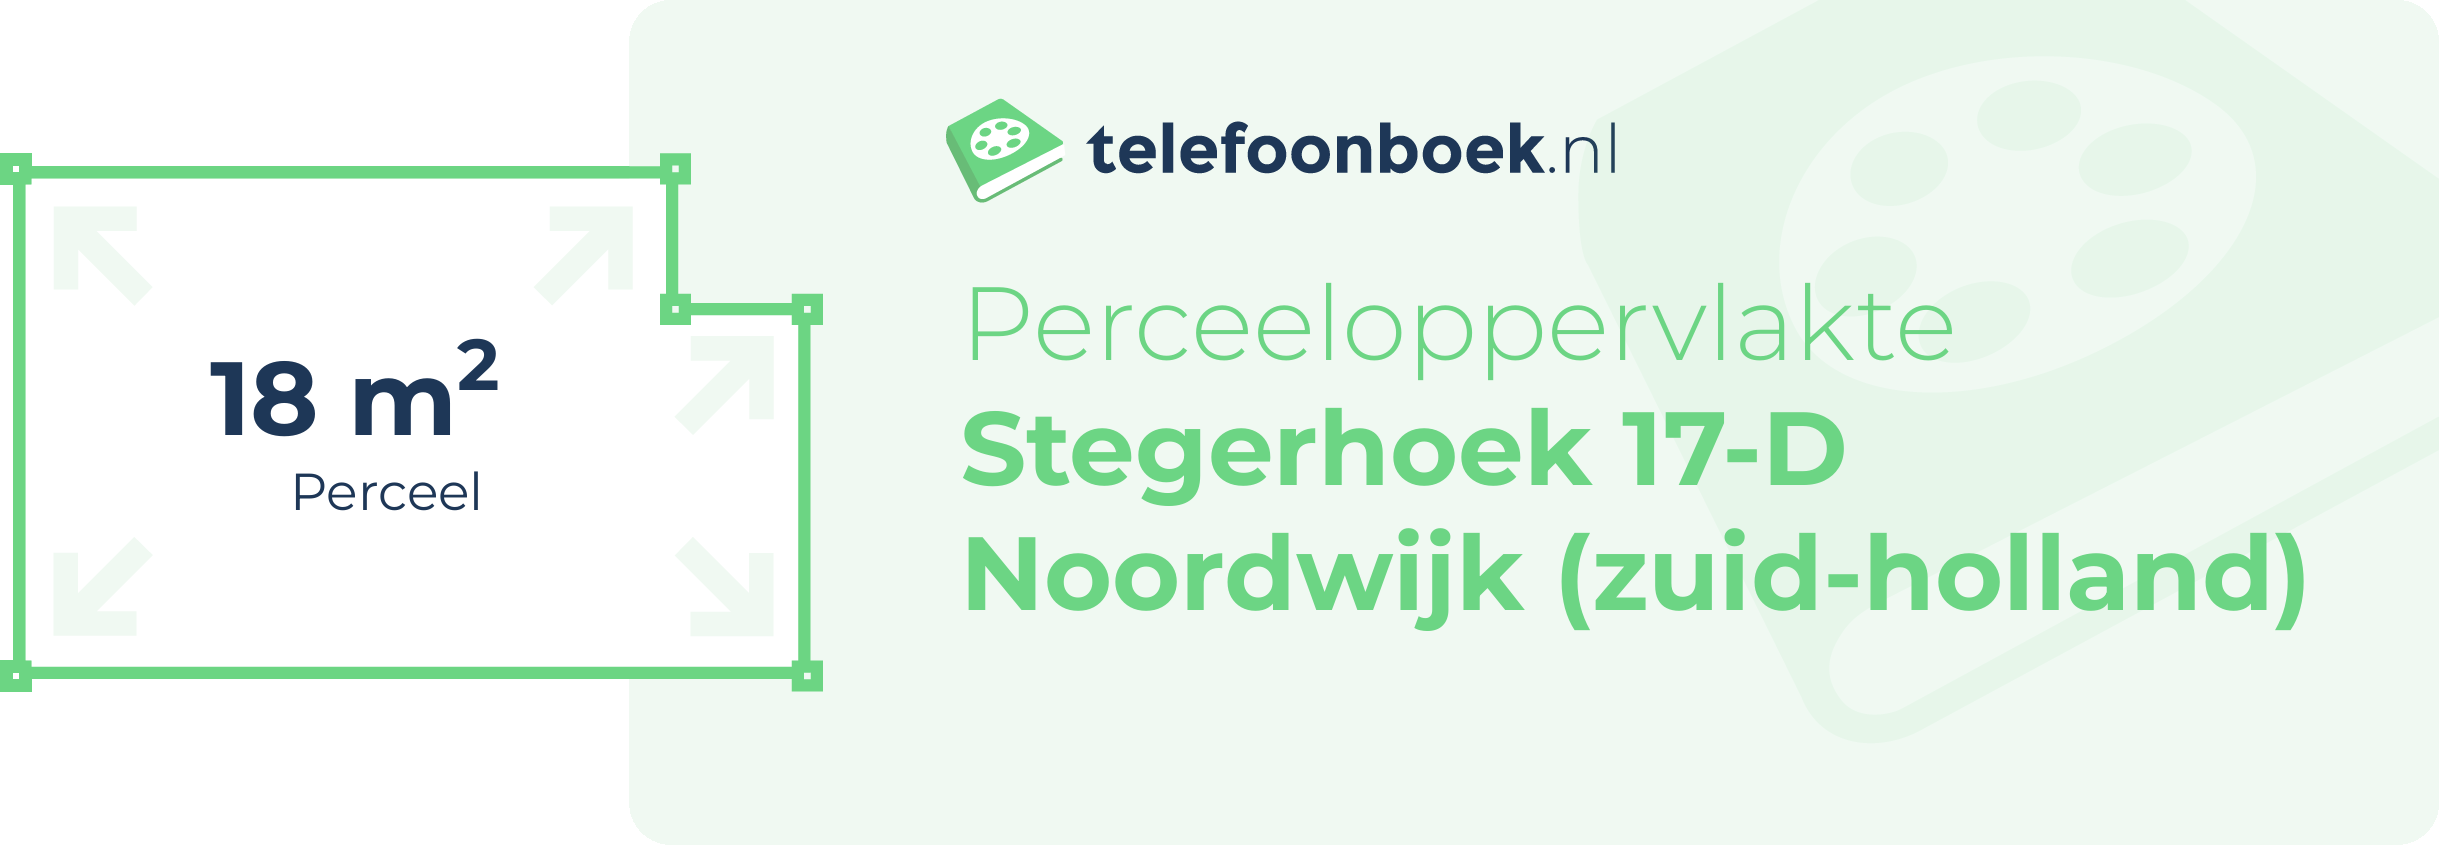 Perceeloppervlakte Stegerhoek 17-D Noordwijk (Zuid-Holland)